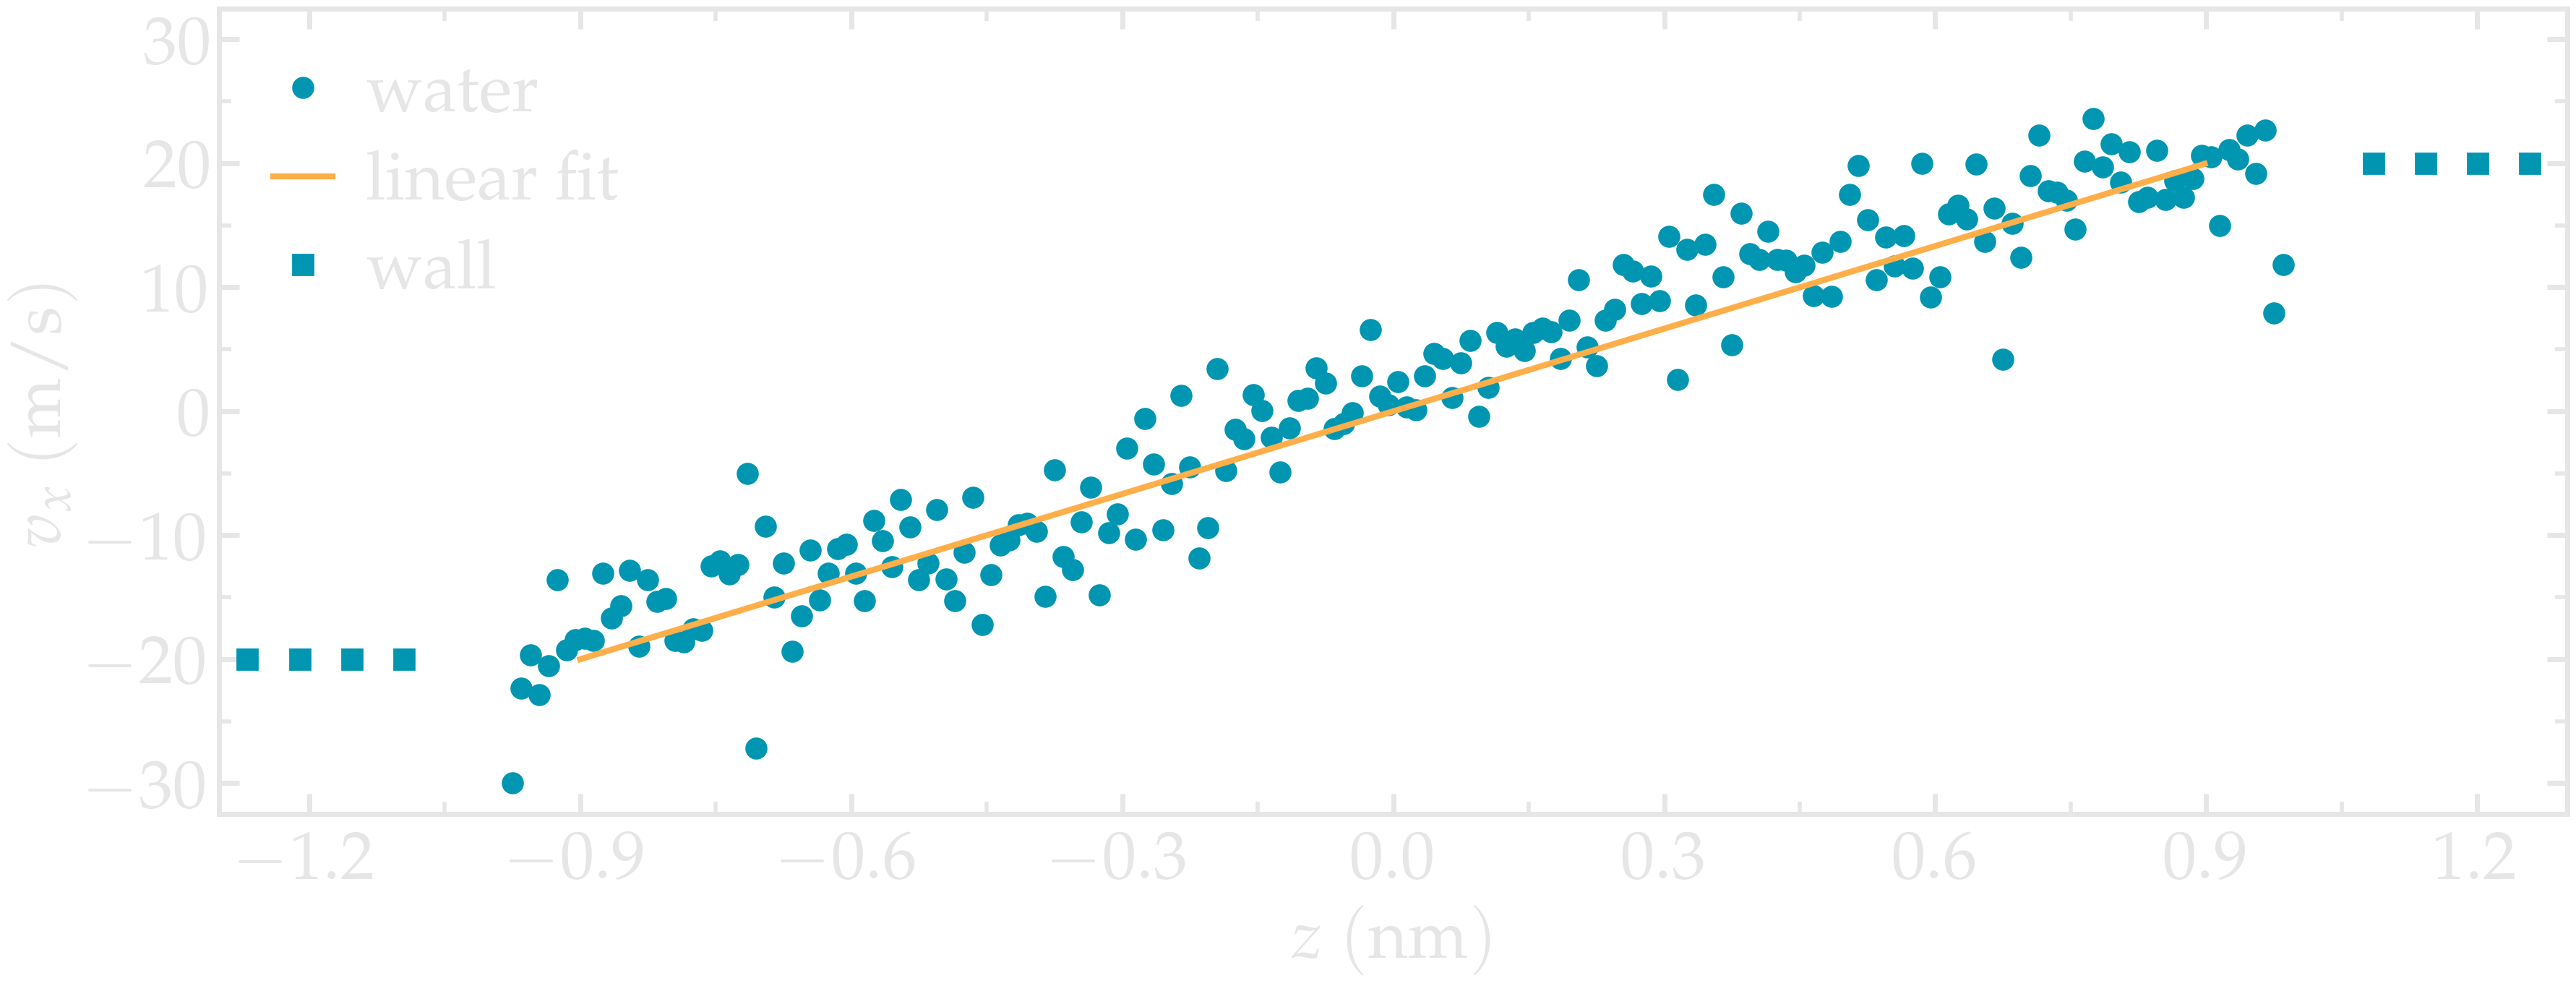 Velocity of the nanosheared fluid